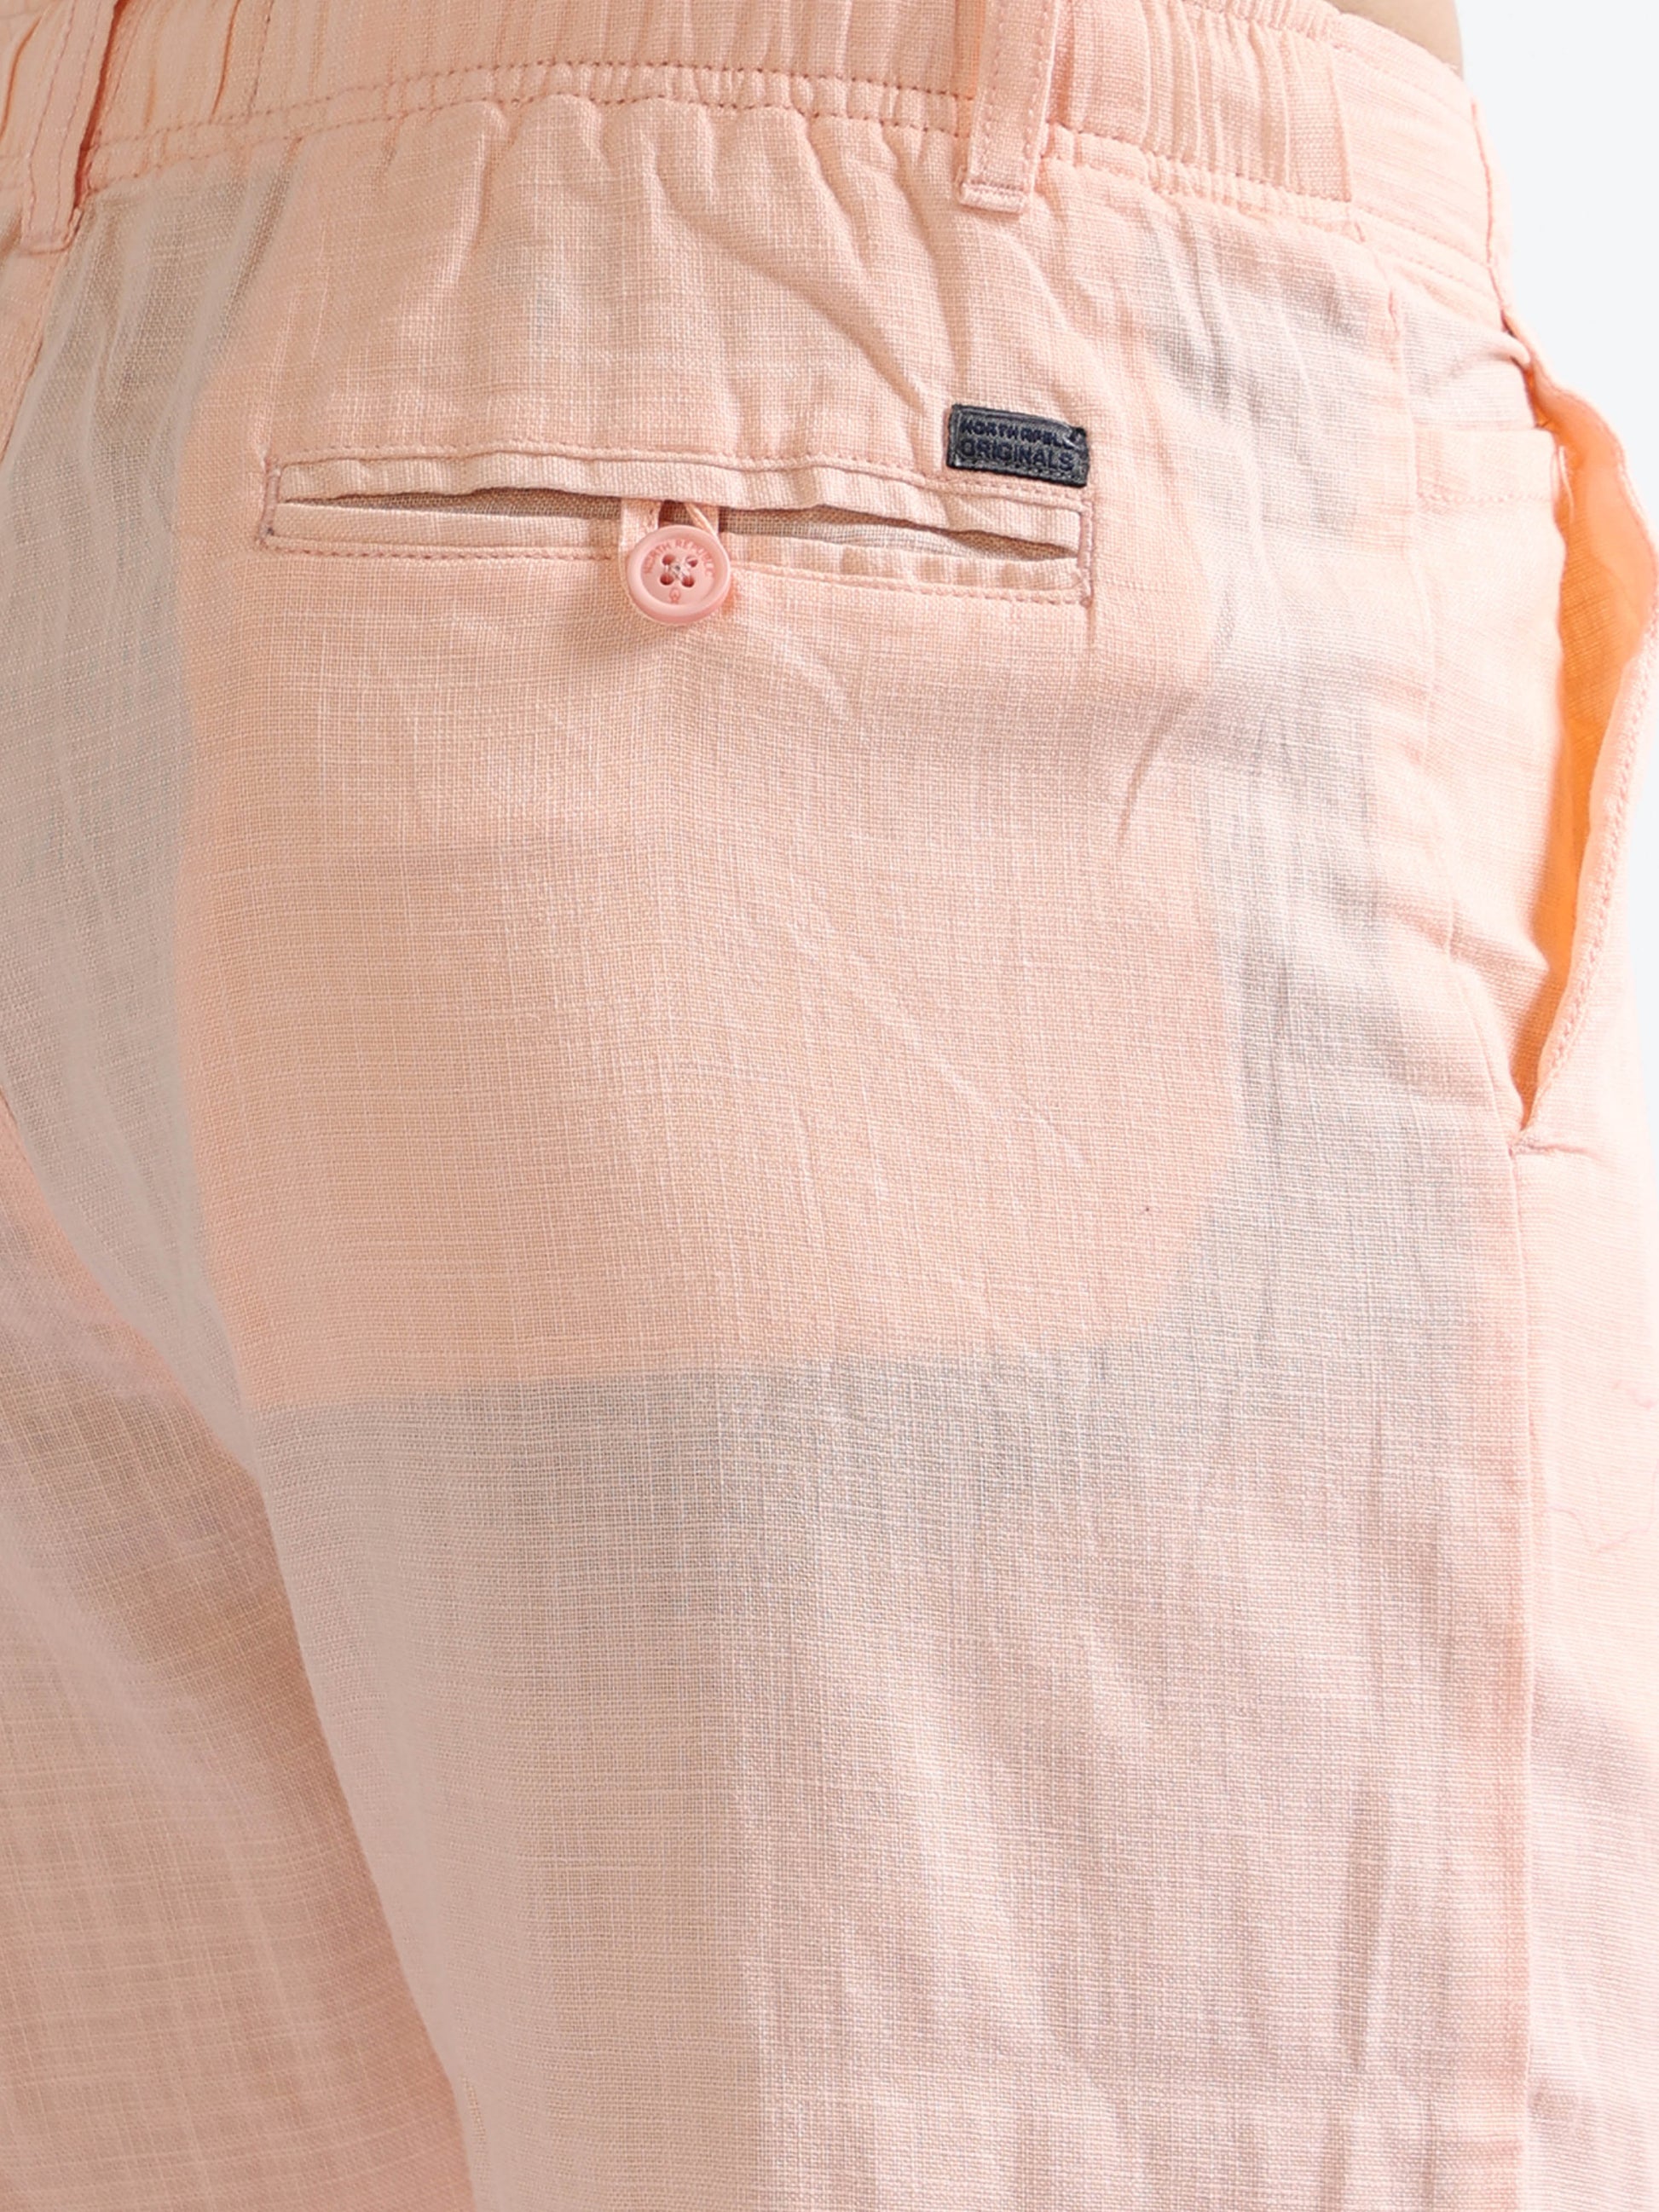 Orange Men's Drawcod Linen Fashion Pant